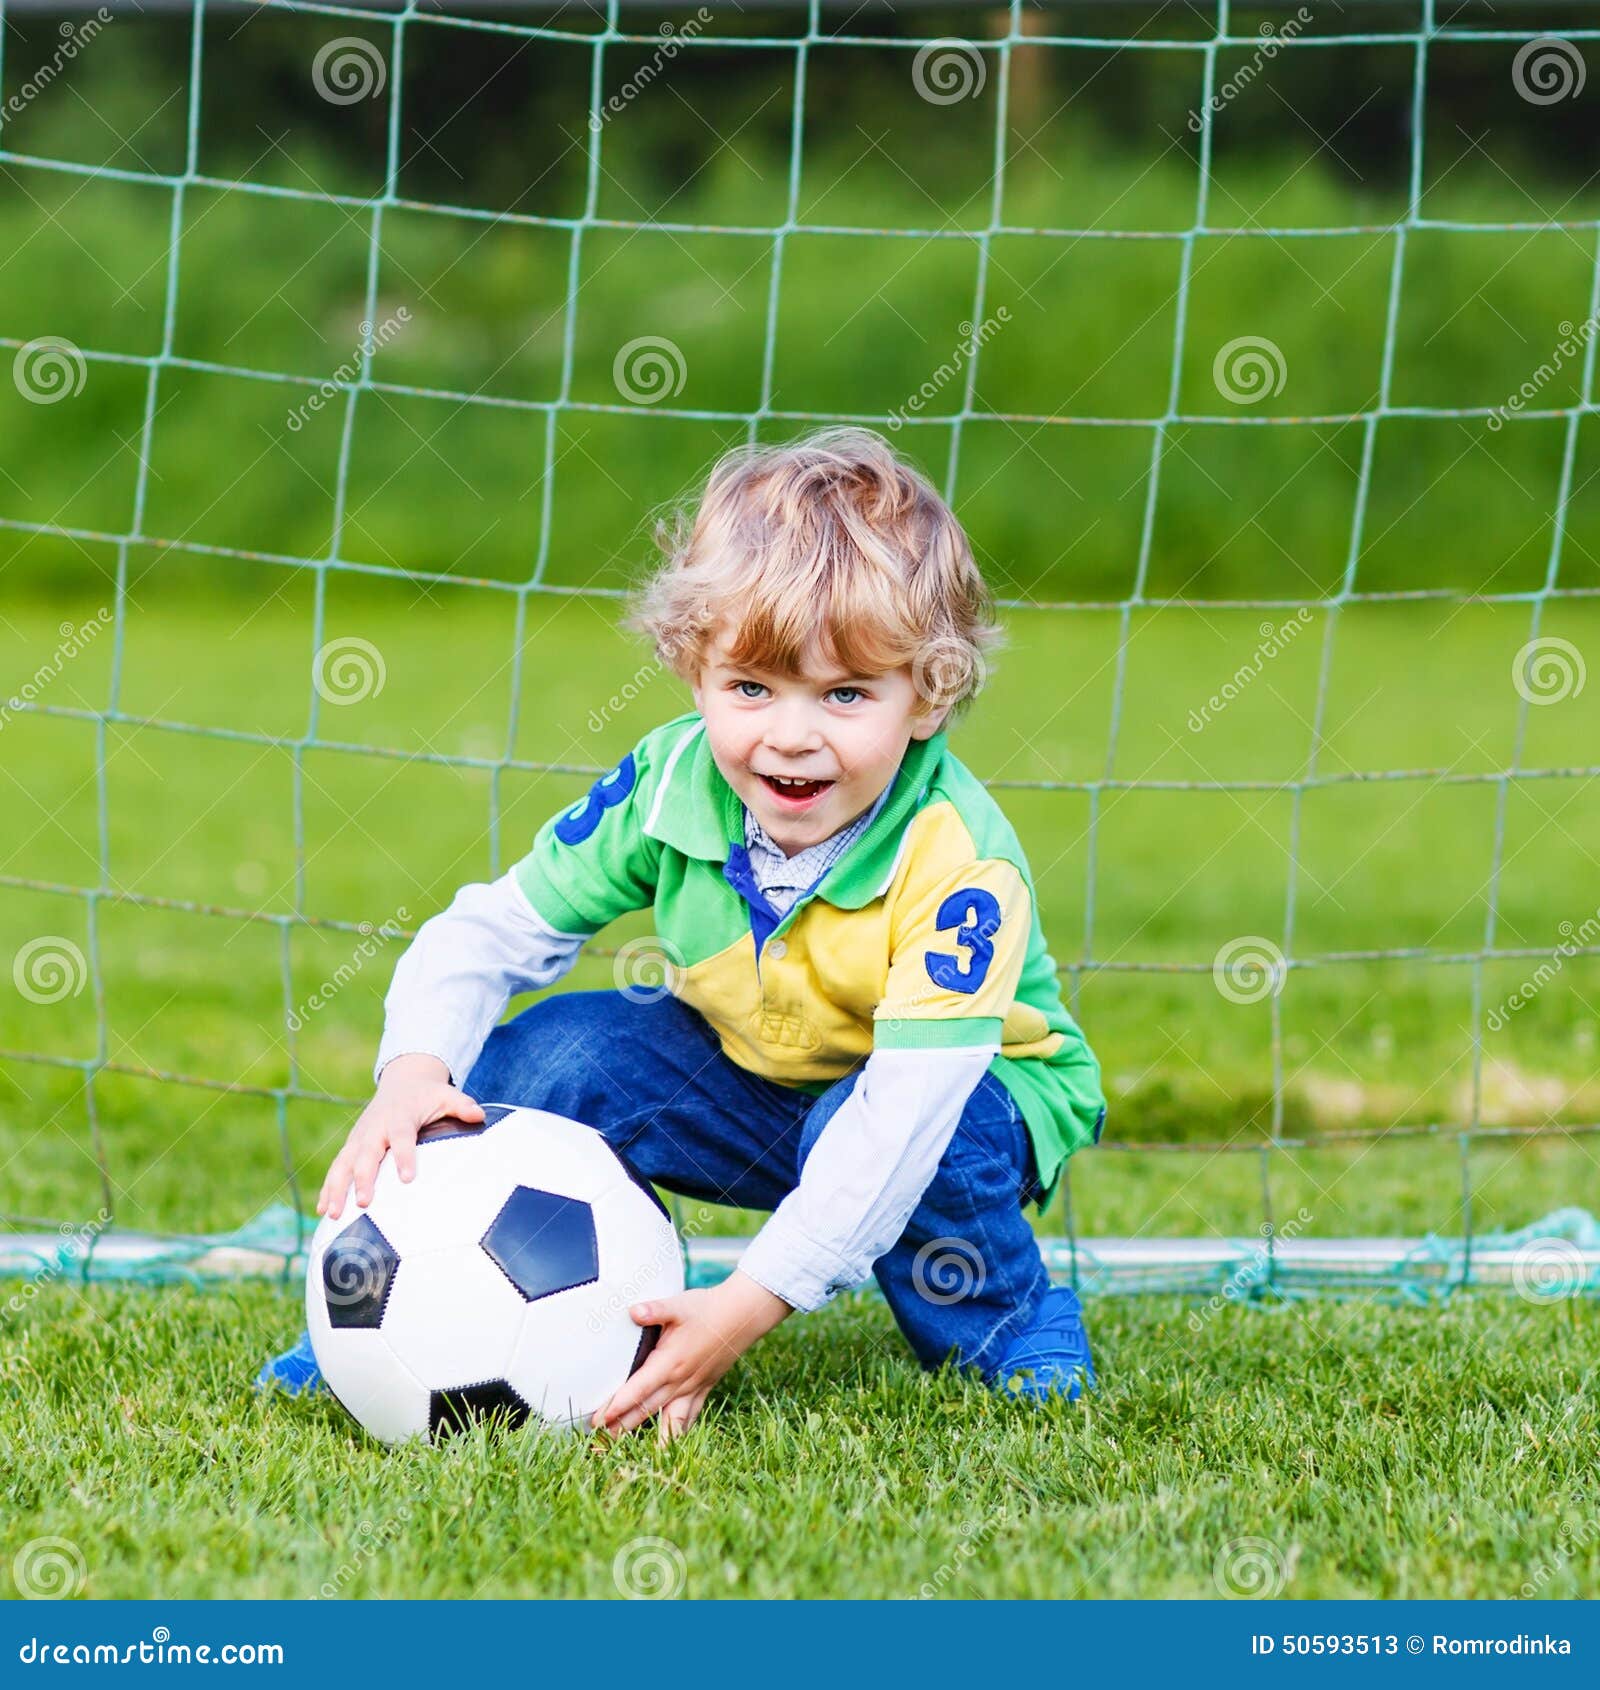 Lindo niño jugar fútbol como delantero Vector de Stock de